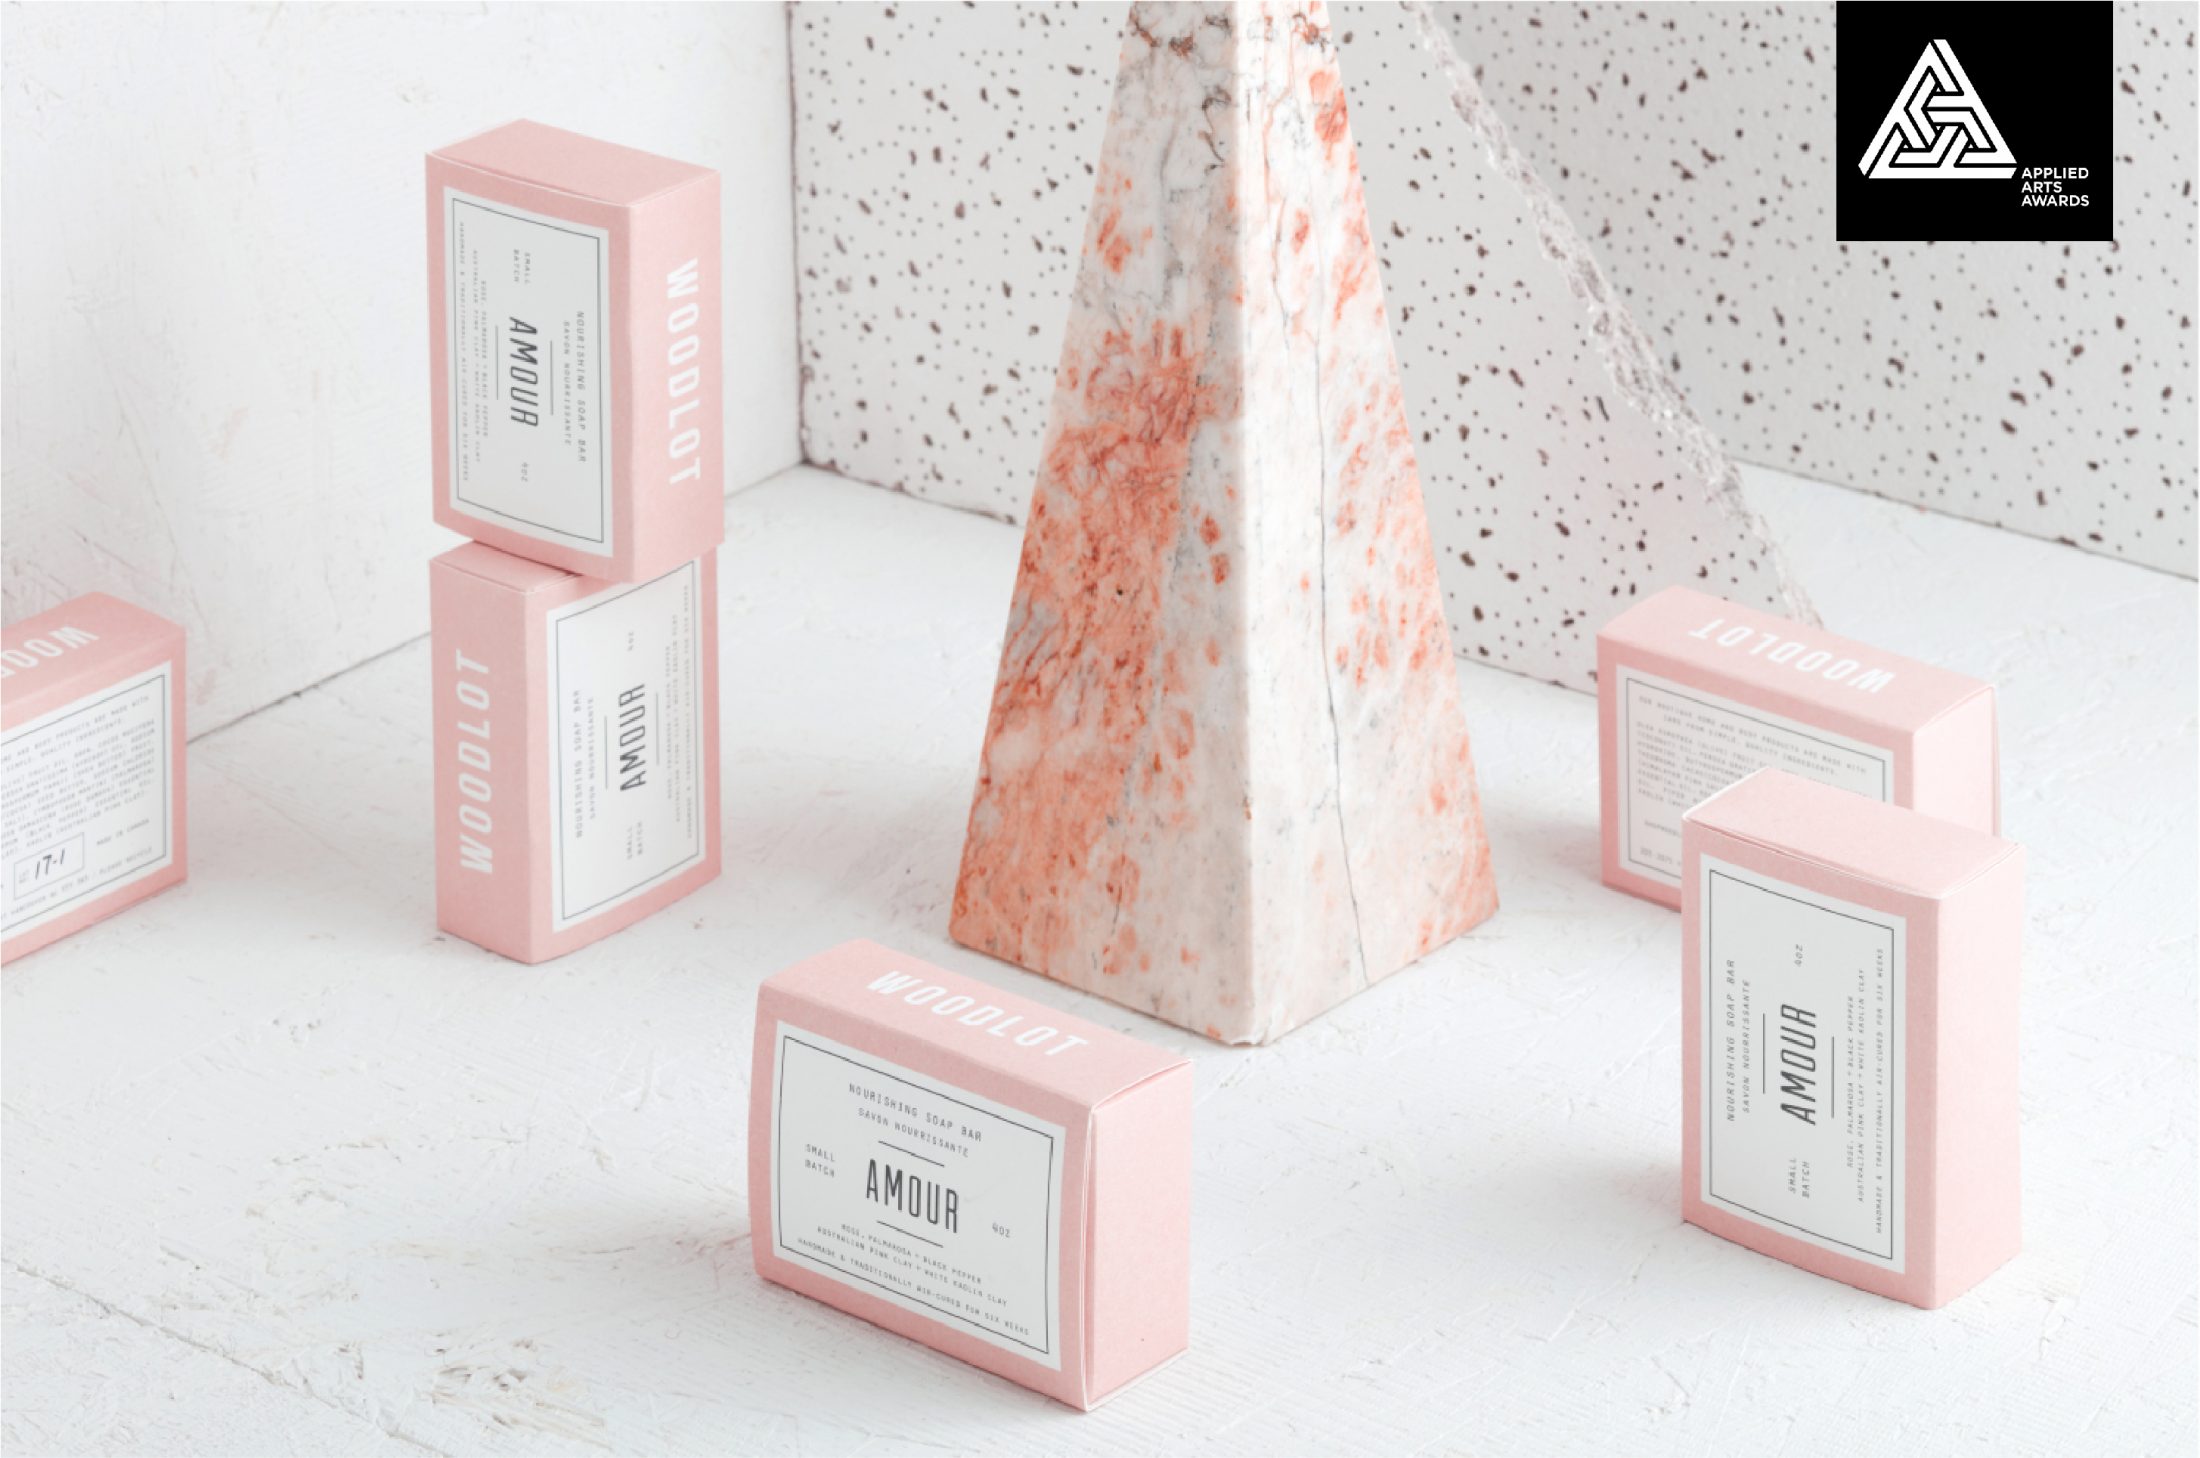 Award winning packaging design for woodlot soap.